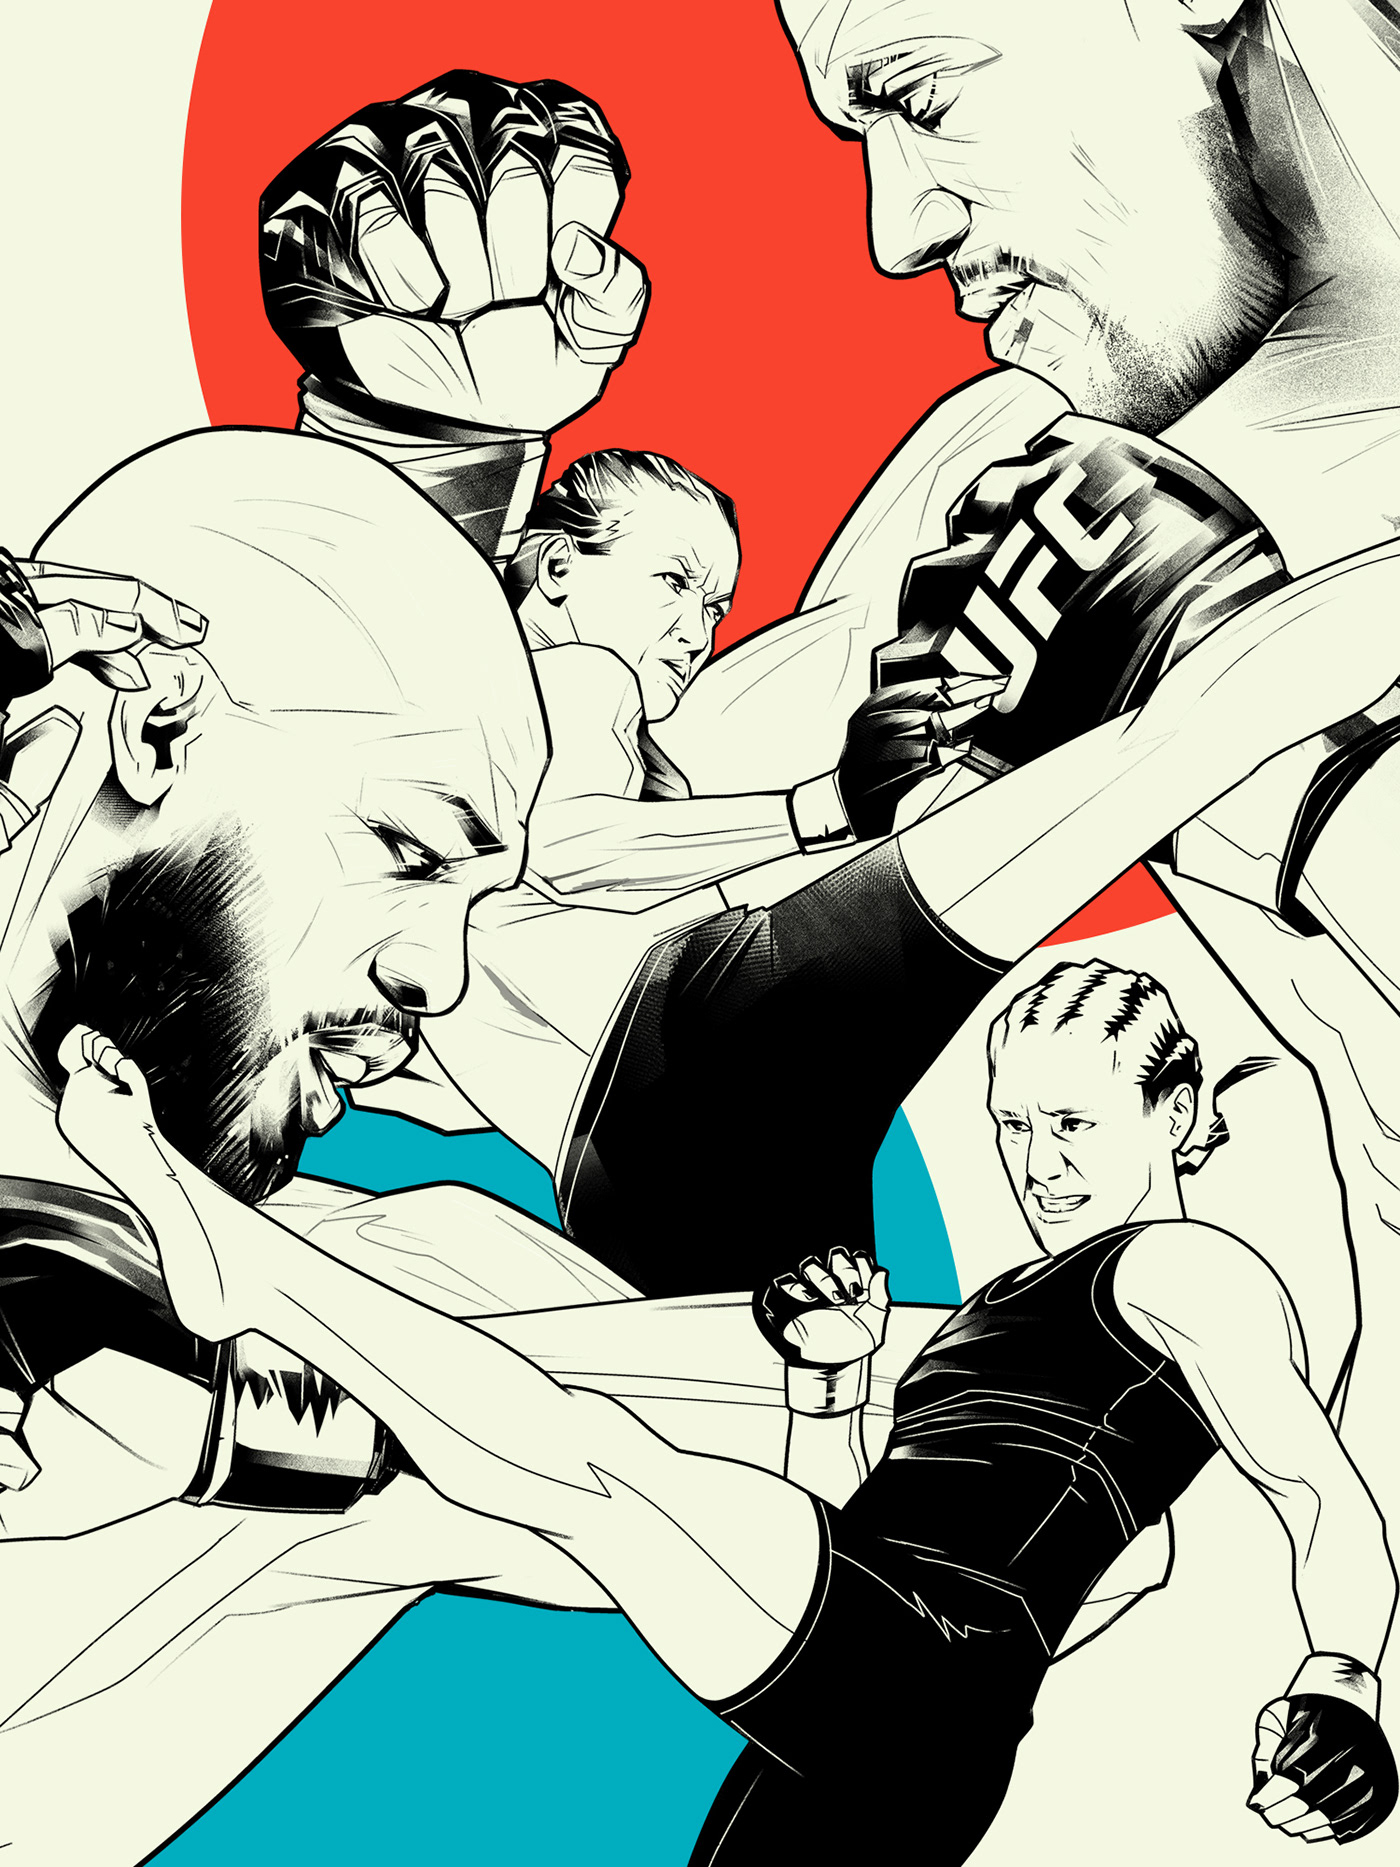 poster sports poster UFC MMA UFC ART fight poster jonjones ufc285 poster art Poster Design